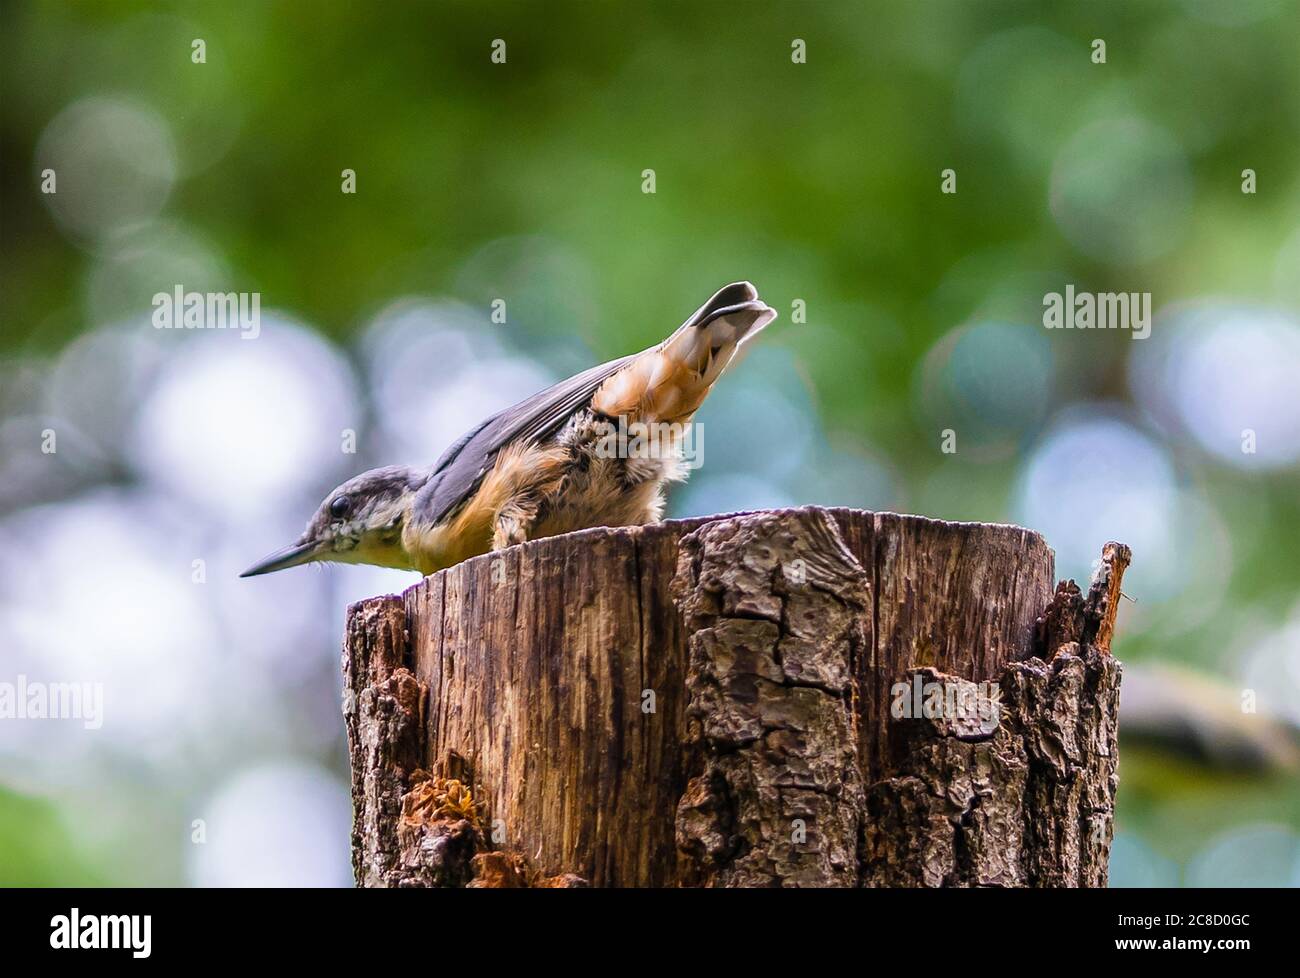 Ein männlicher eurasischer Aktvogel - Sitta europaea Vogel - thront auf einem Baumstumpf im Wald des Königsheides in Berlin Johannisthal, Deutschland Stockfoto